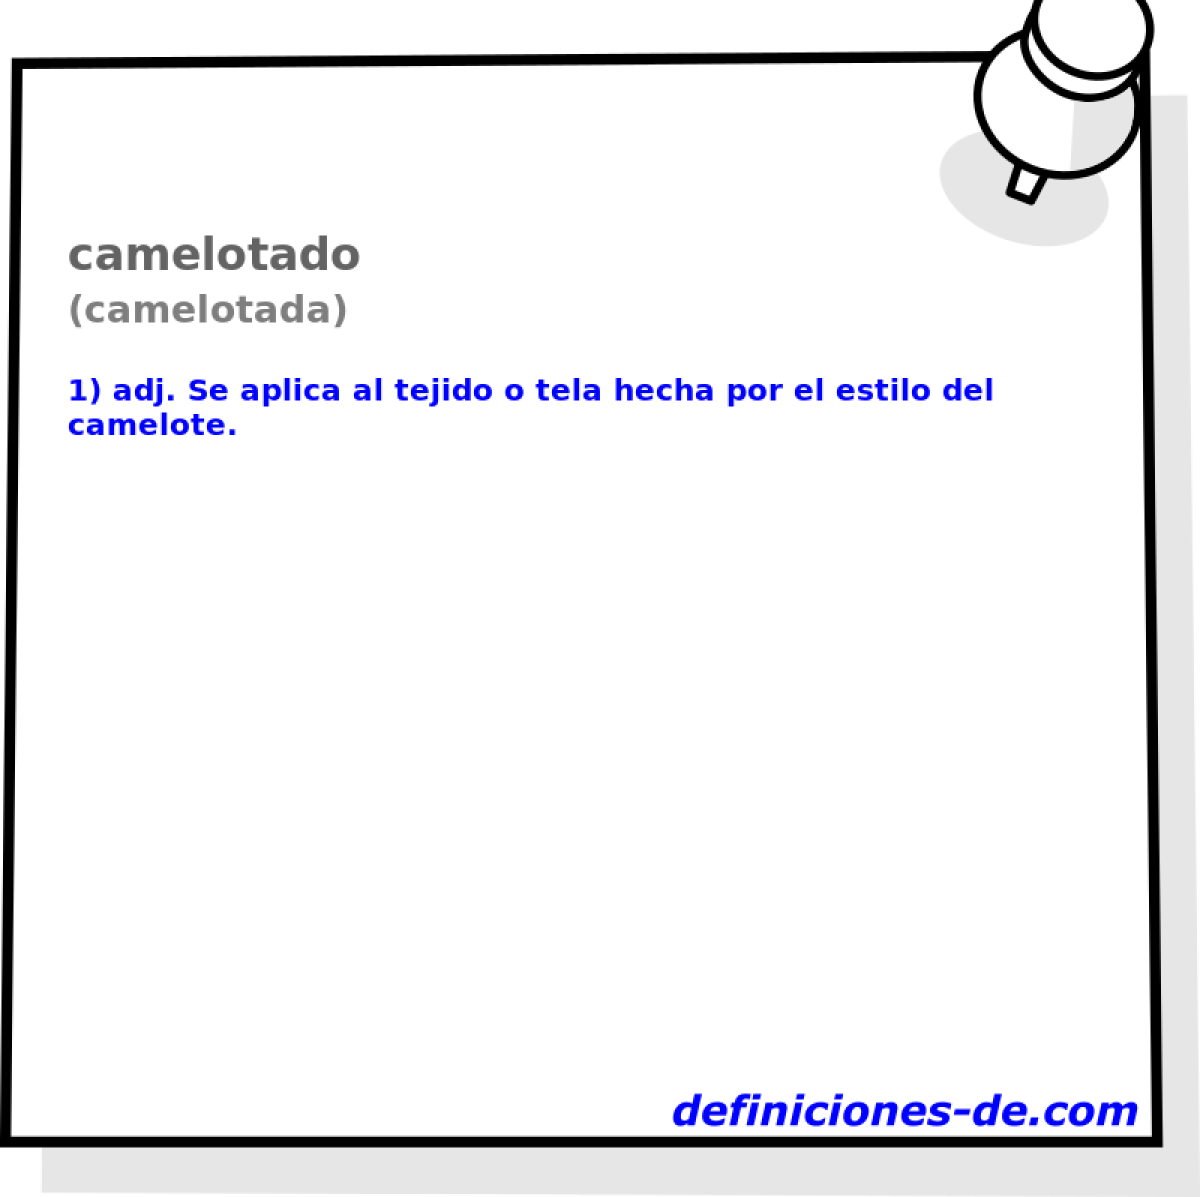 camelotado (camelotada)